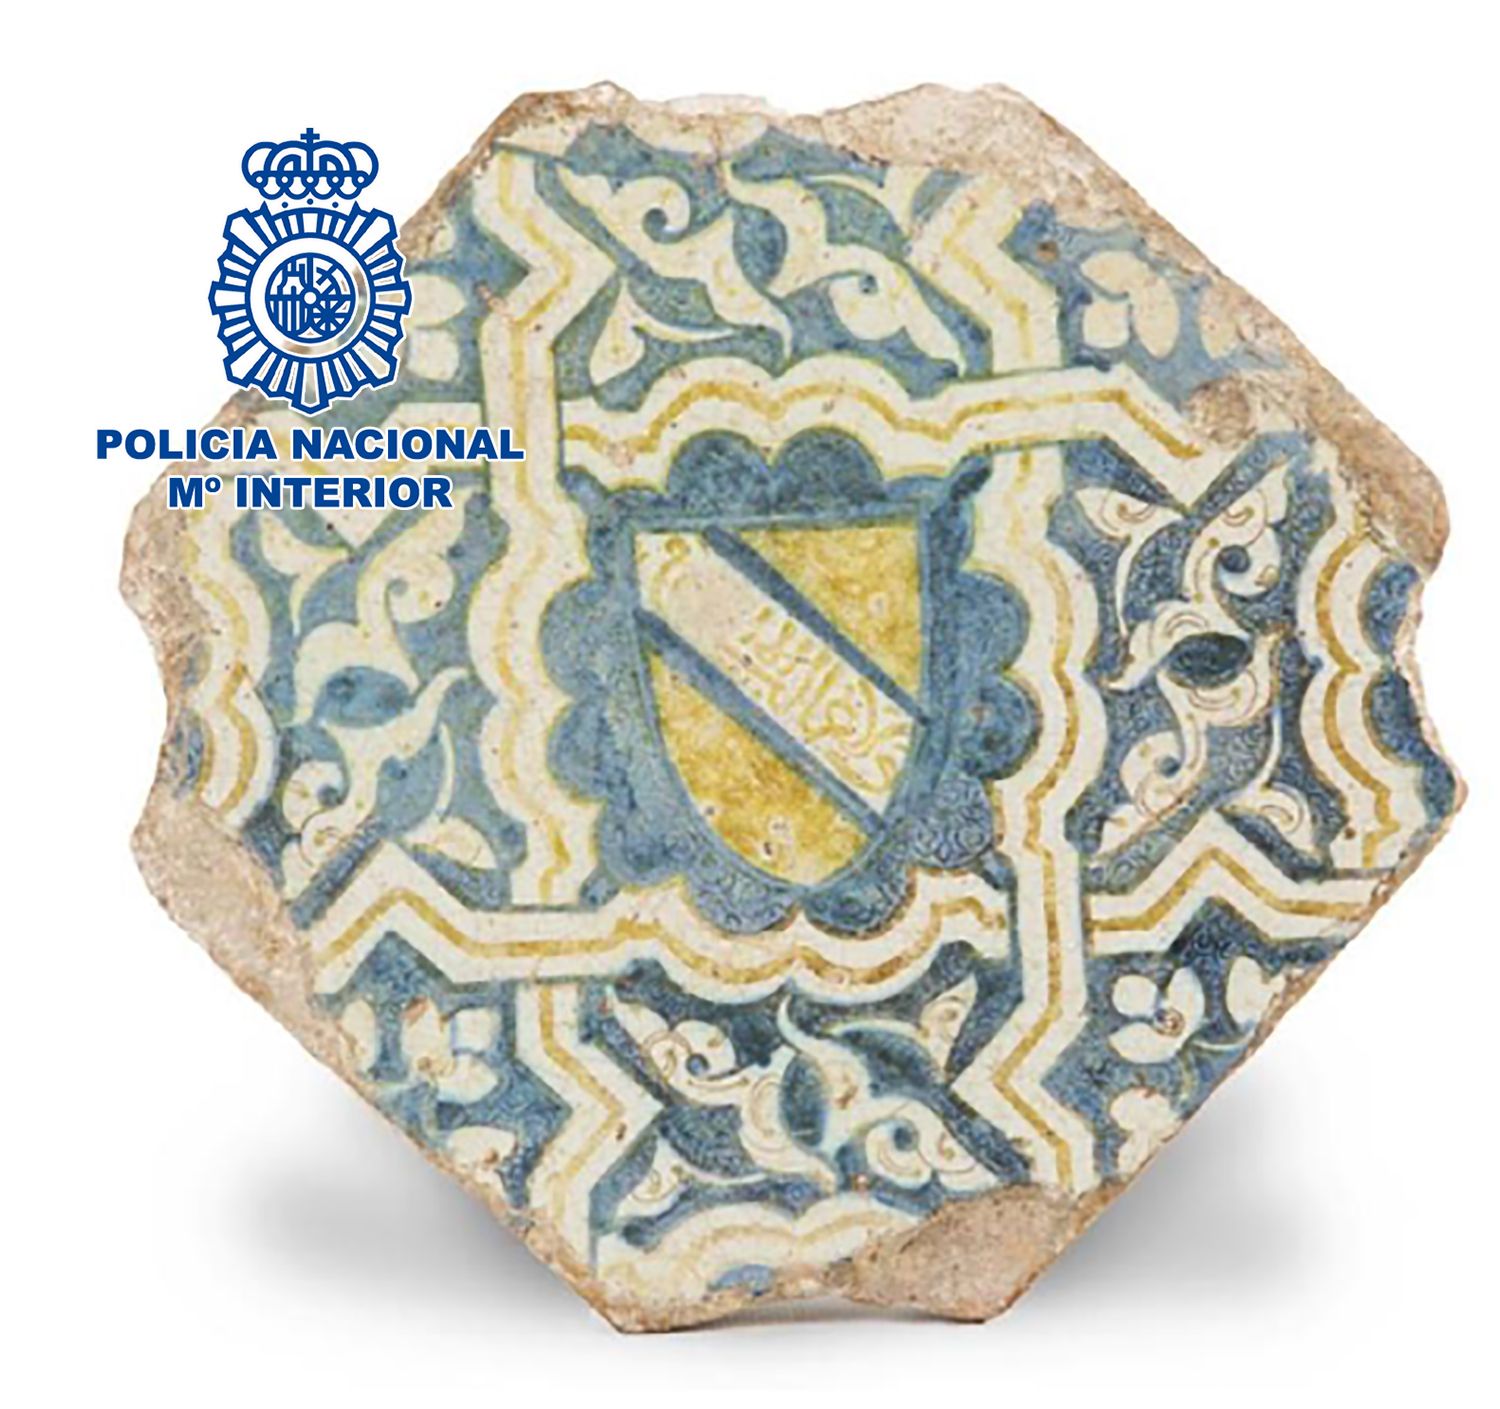 La Policía Nacional recupera un azulejo de cerámica del siglo XV que pudo pertenecer a la Alhambra